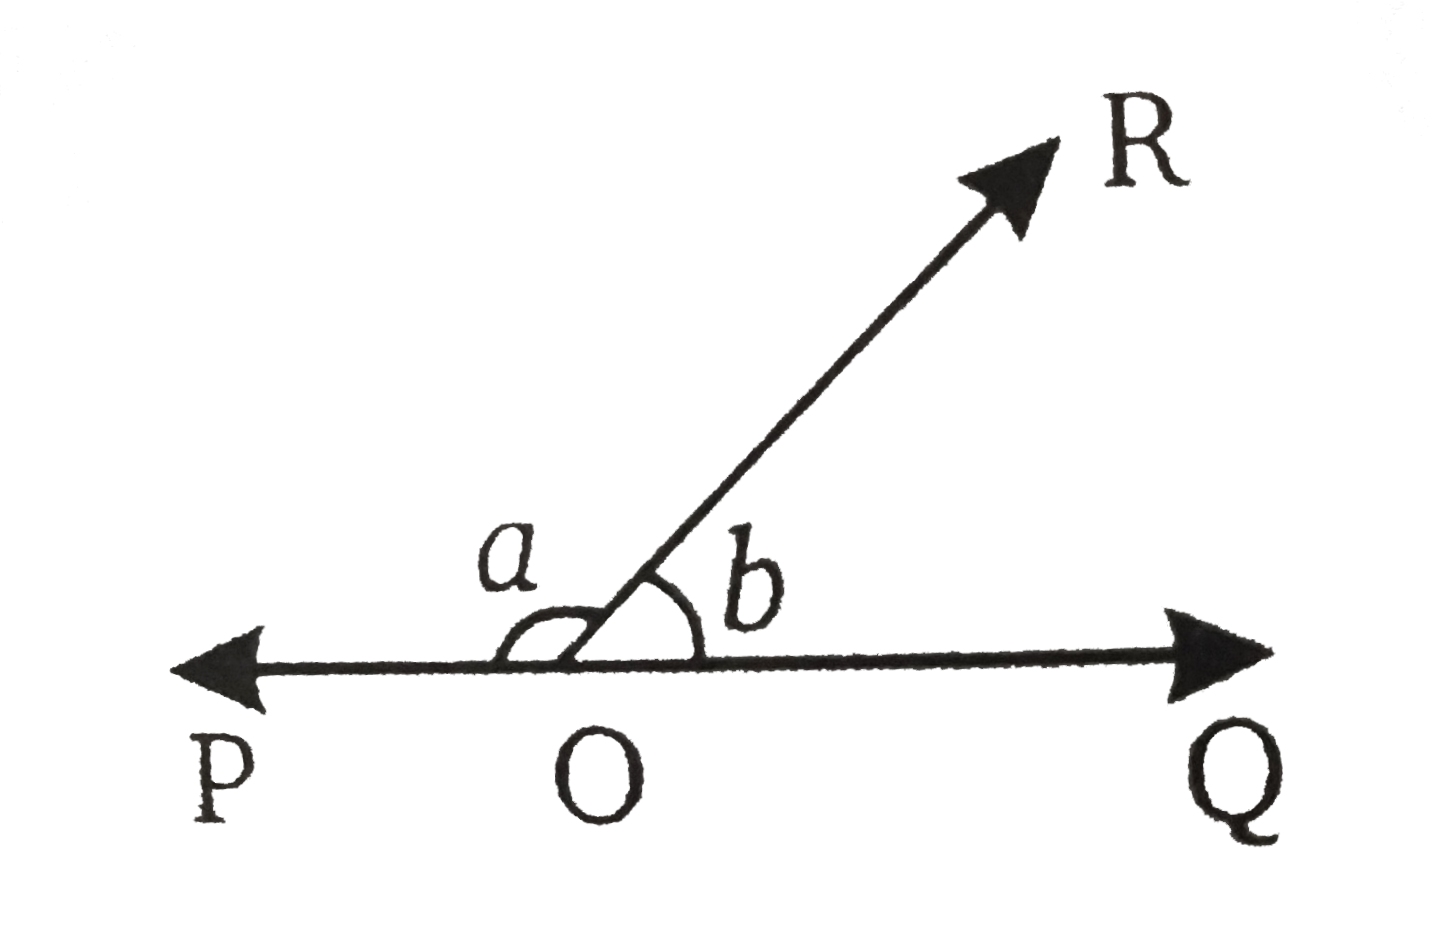 चित्र में, anglePOR और angleQOR एक रैखिक युग्म के रूप के हैं | यदि a-b=80^(@), तो a और b के मान ज्ञात कीजिए |